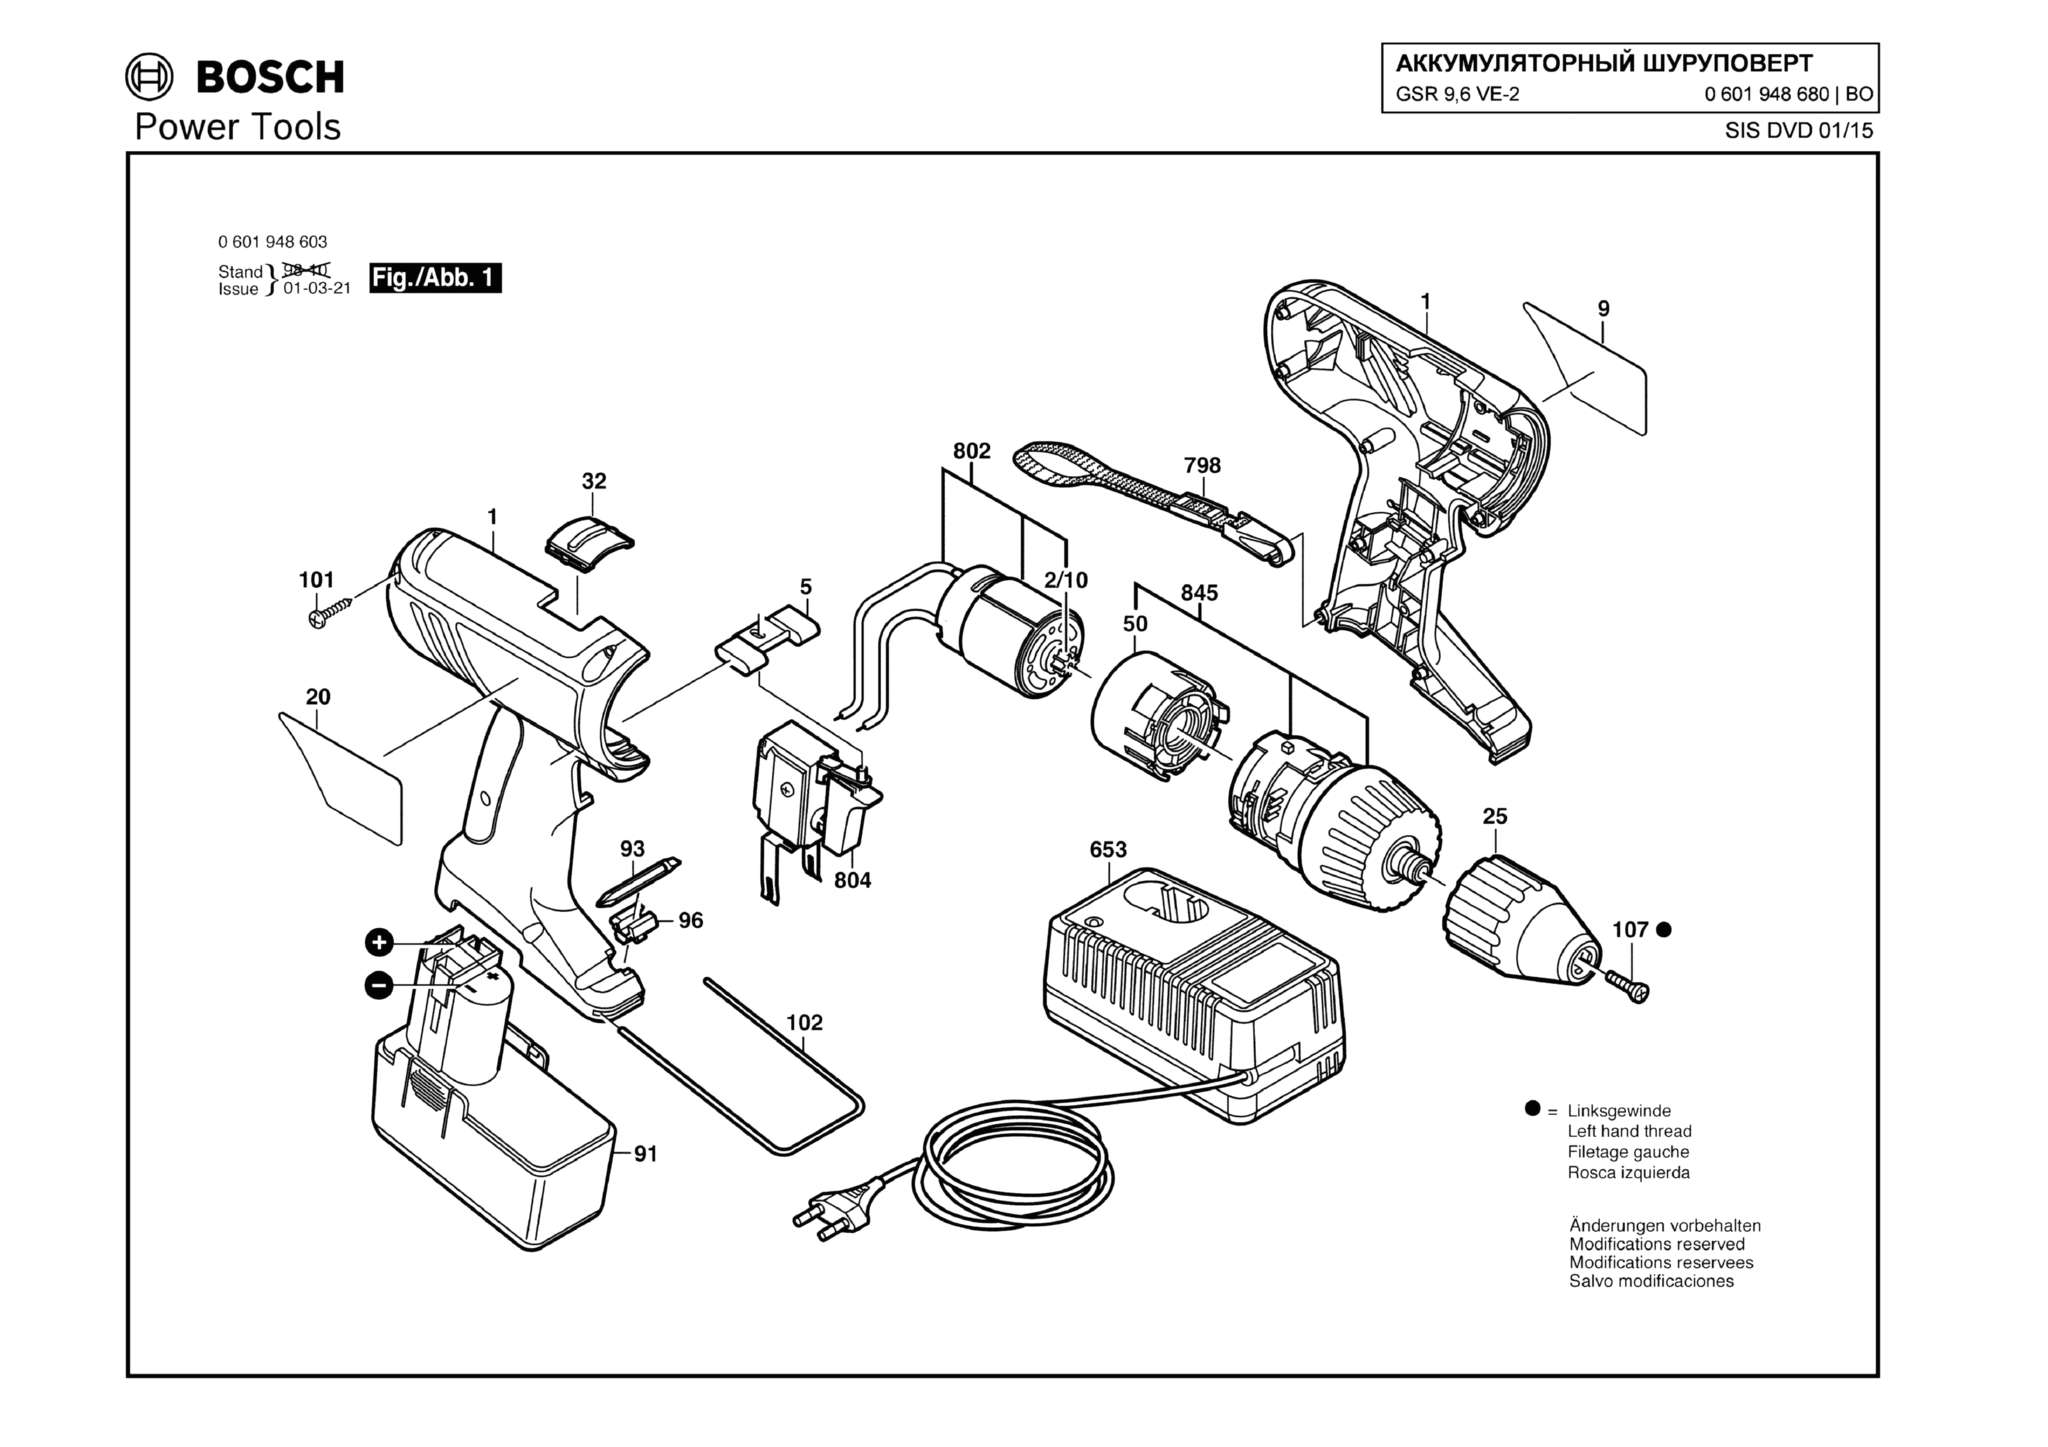 Запчасти, схема и деталировка Bosch GSR 9,6 VE-2 (ТИП 0601948680)